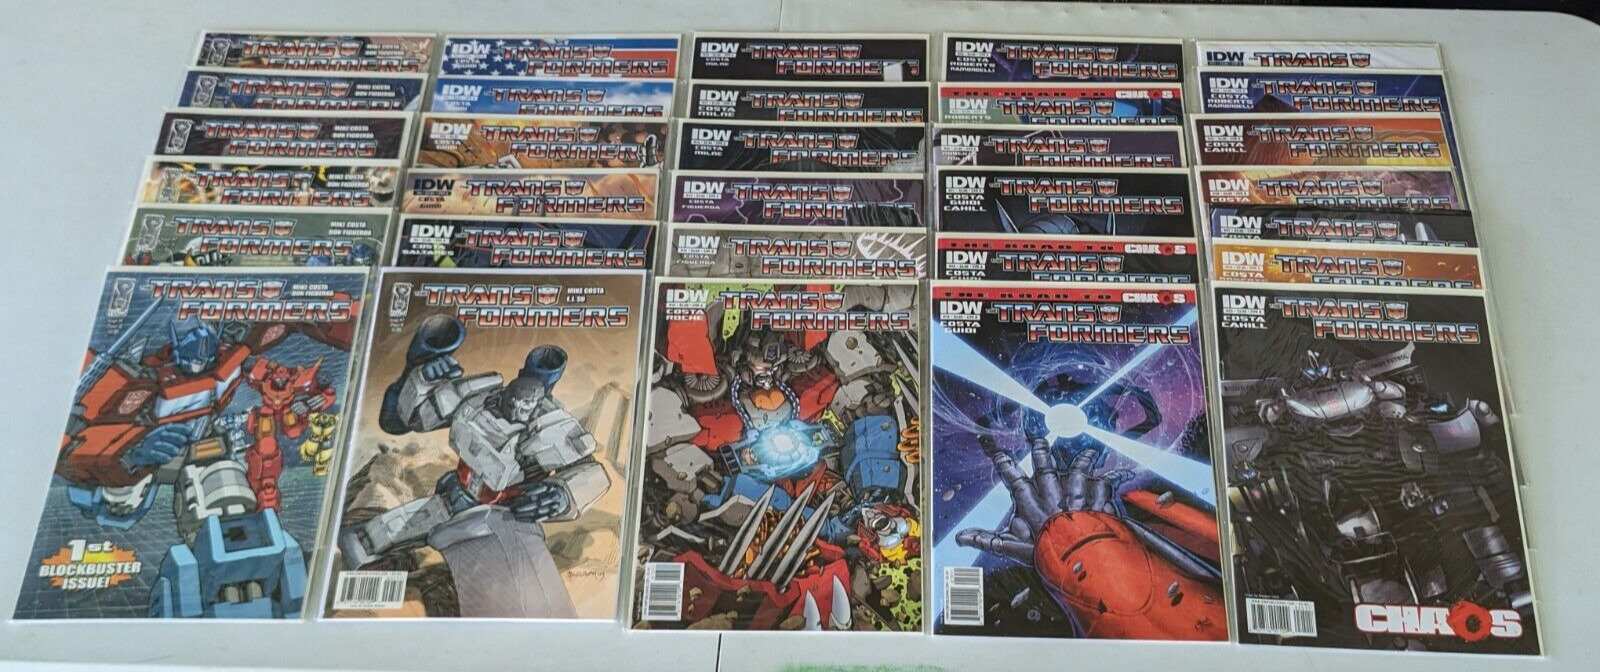 Transformers #1-31 IDW w/ Variants Near Mint Full Set Run Series Complete 2009